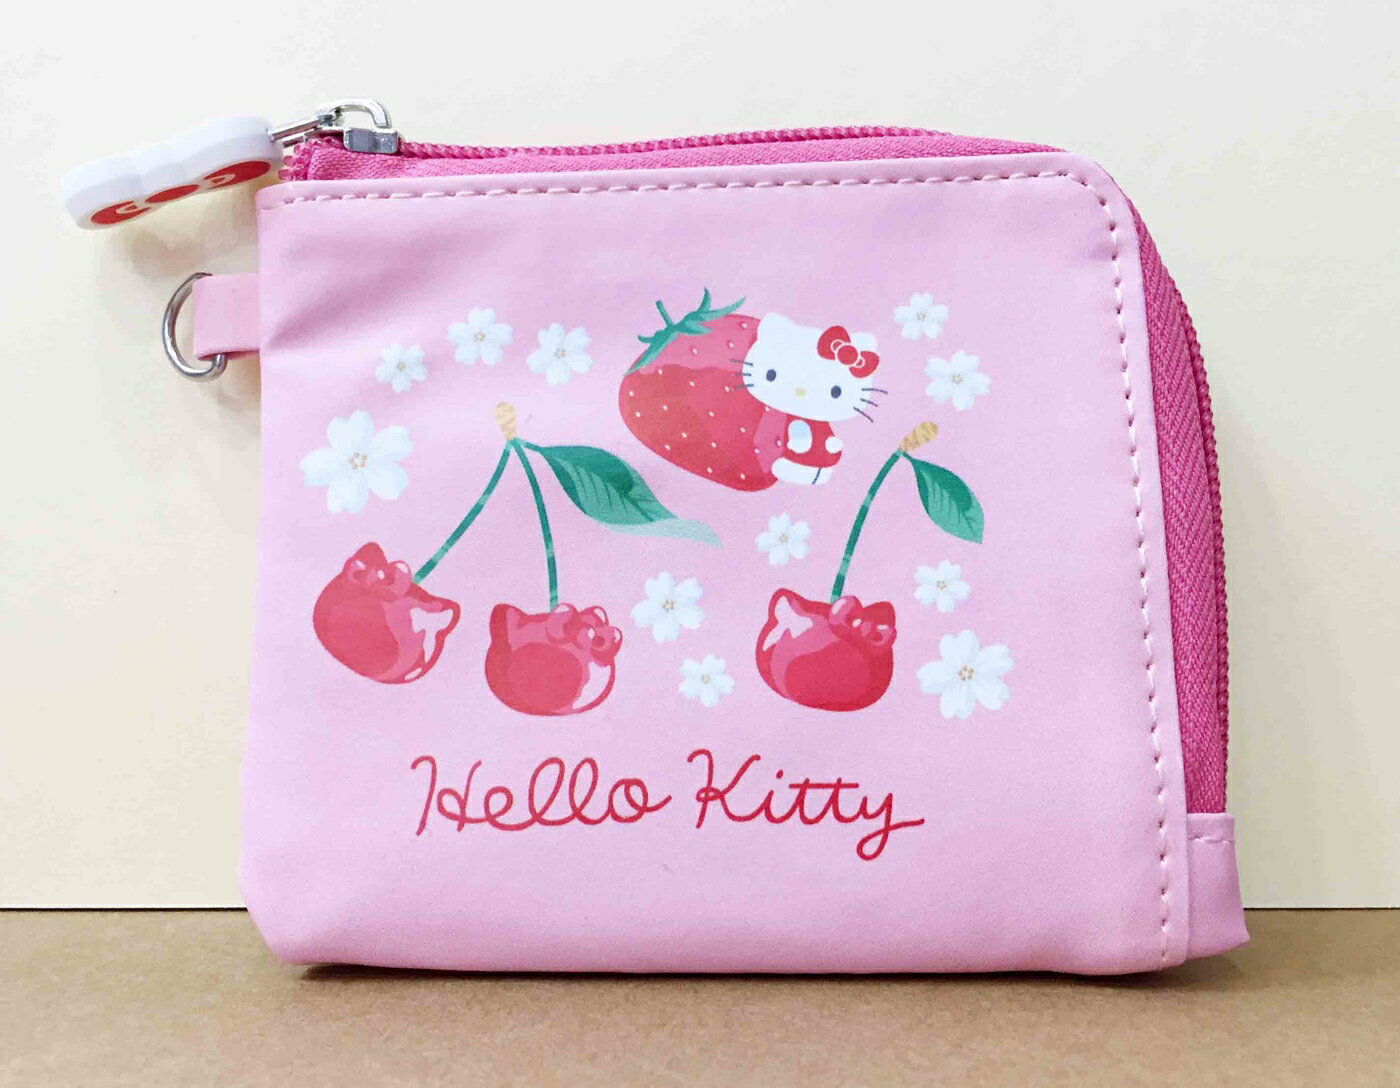 【震撼精品百貨】Hello Kitty 凱蒂貓-迷你短夾/零錢包-KITTY草莓櫻桃圖案 震撼日式精品百貨